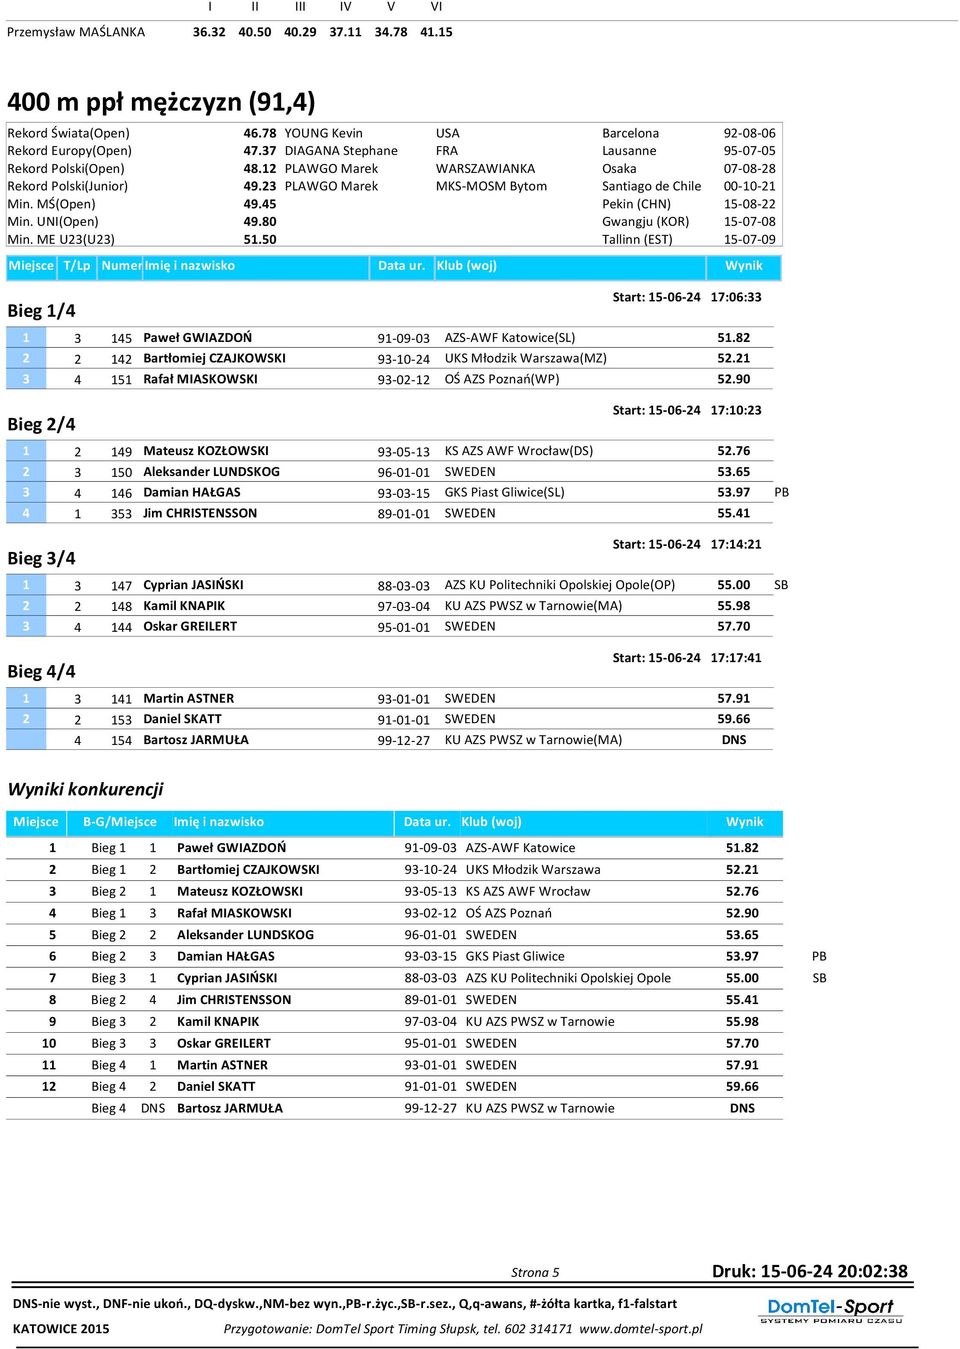 MŚ(Open) 49.45 Min. UNI(Open) 49.80 Min. ME U23(U23) 51.50 Bieg 1/4 Start: 15-06-24 17:06:33 1 3 145 Paweł GWIAZDOŃ 91-09-03 AZS-AWF Katowice(SL) 51.